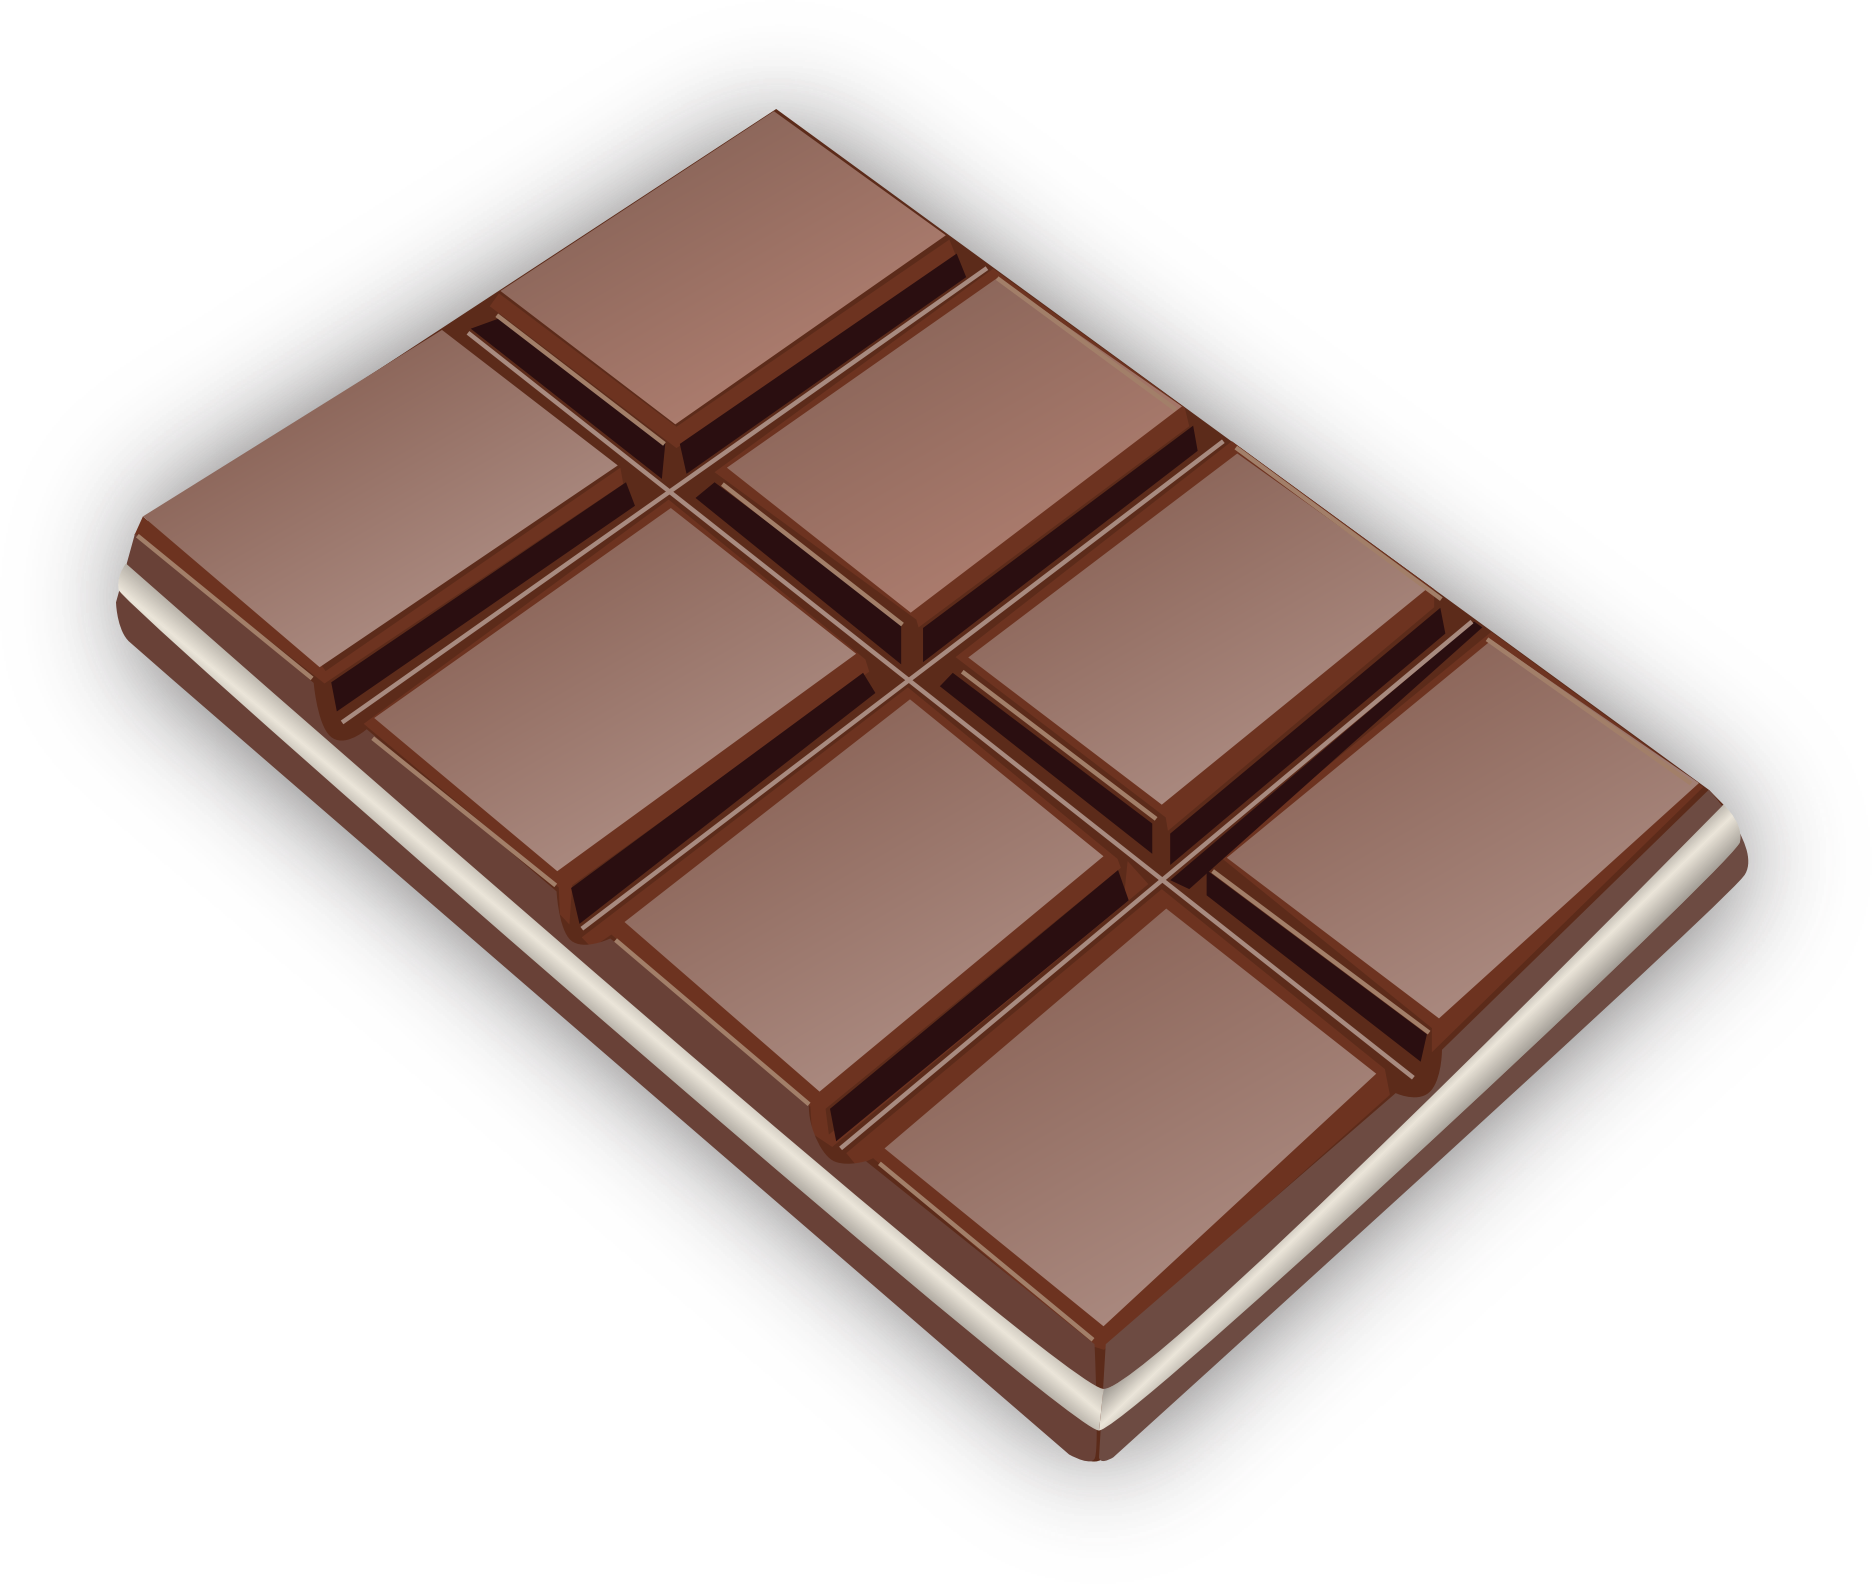 Chocolate Bar Transparent Images